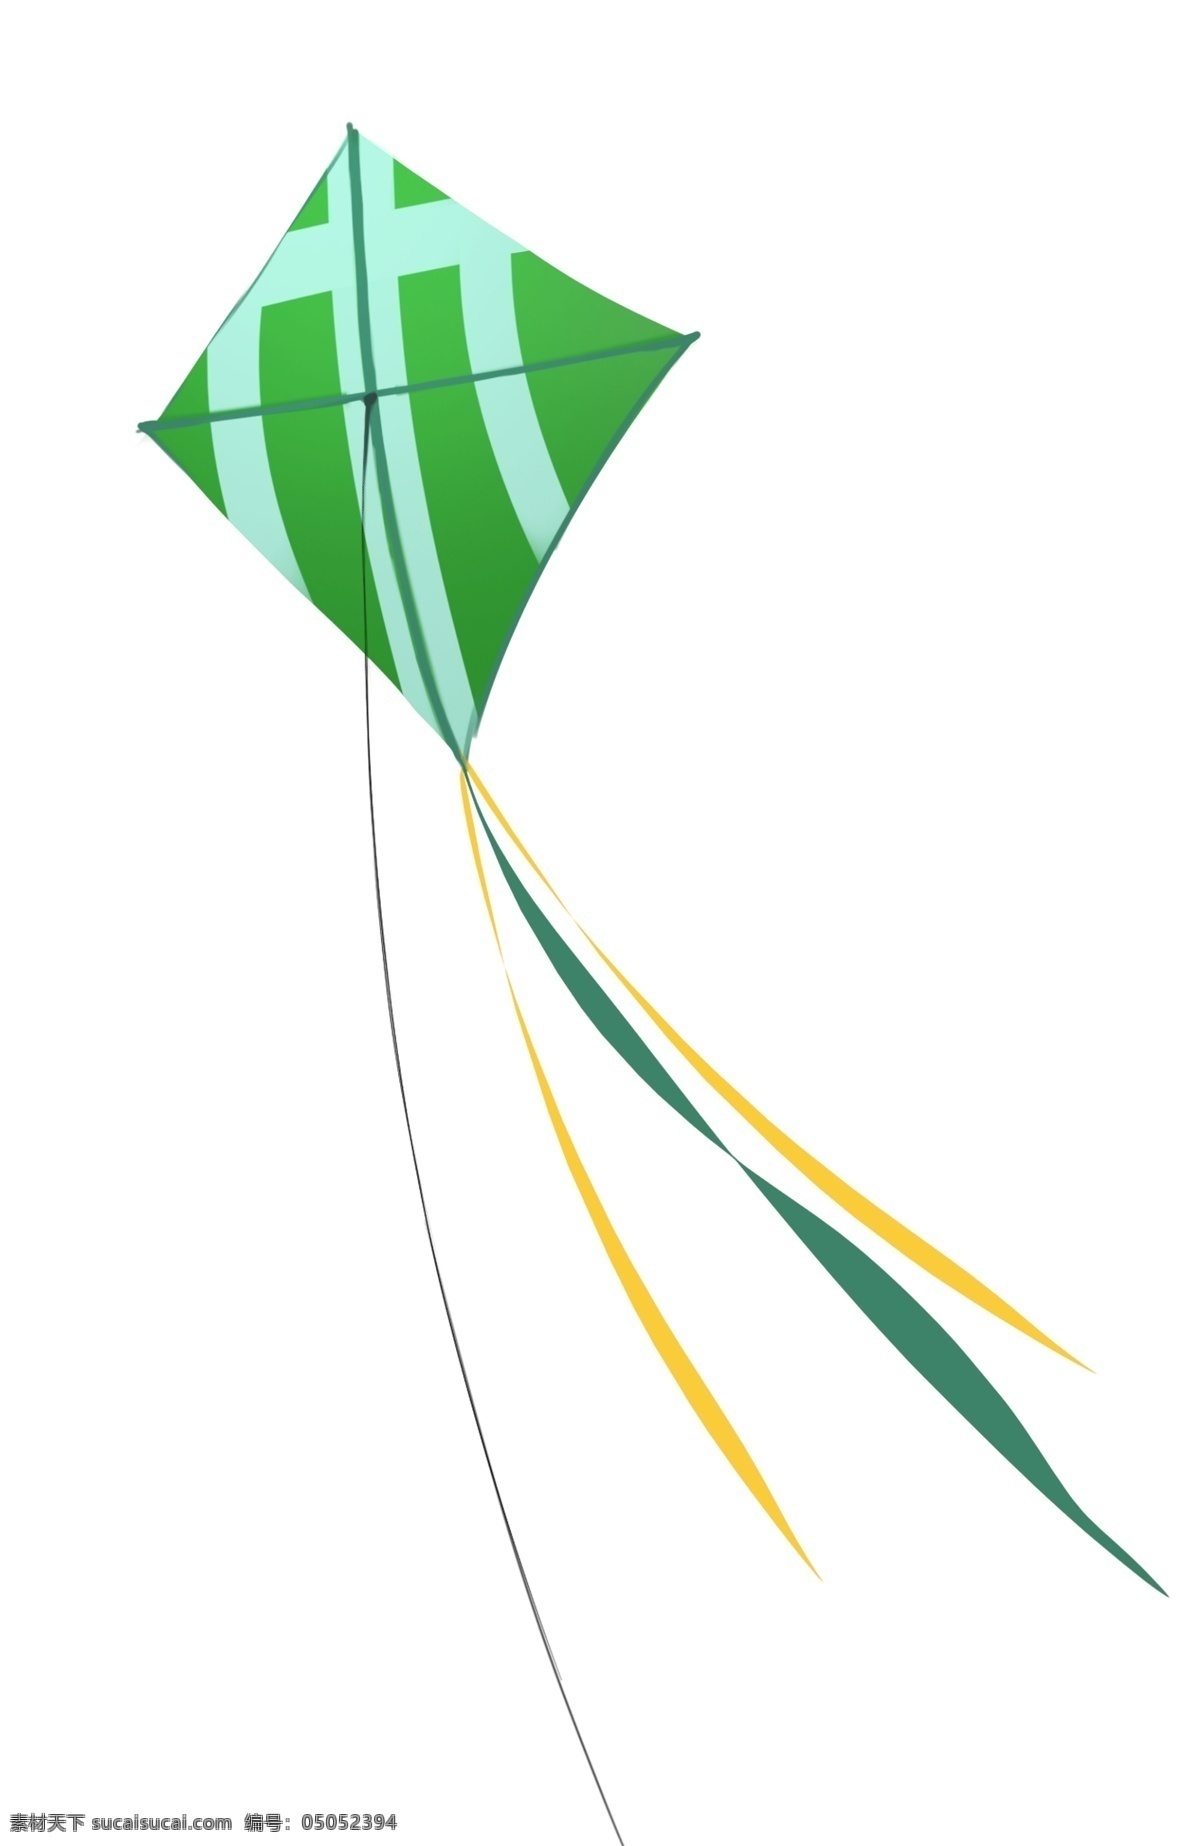 绿色 风筝 玩具 插画 绿色的风筝 卡通插画 风筝插画 玩具插画 玩具风筝 风筝模型 飘扬的风筝